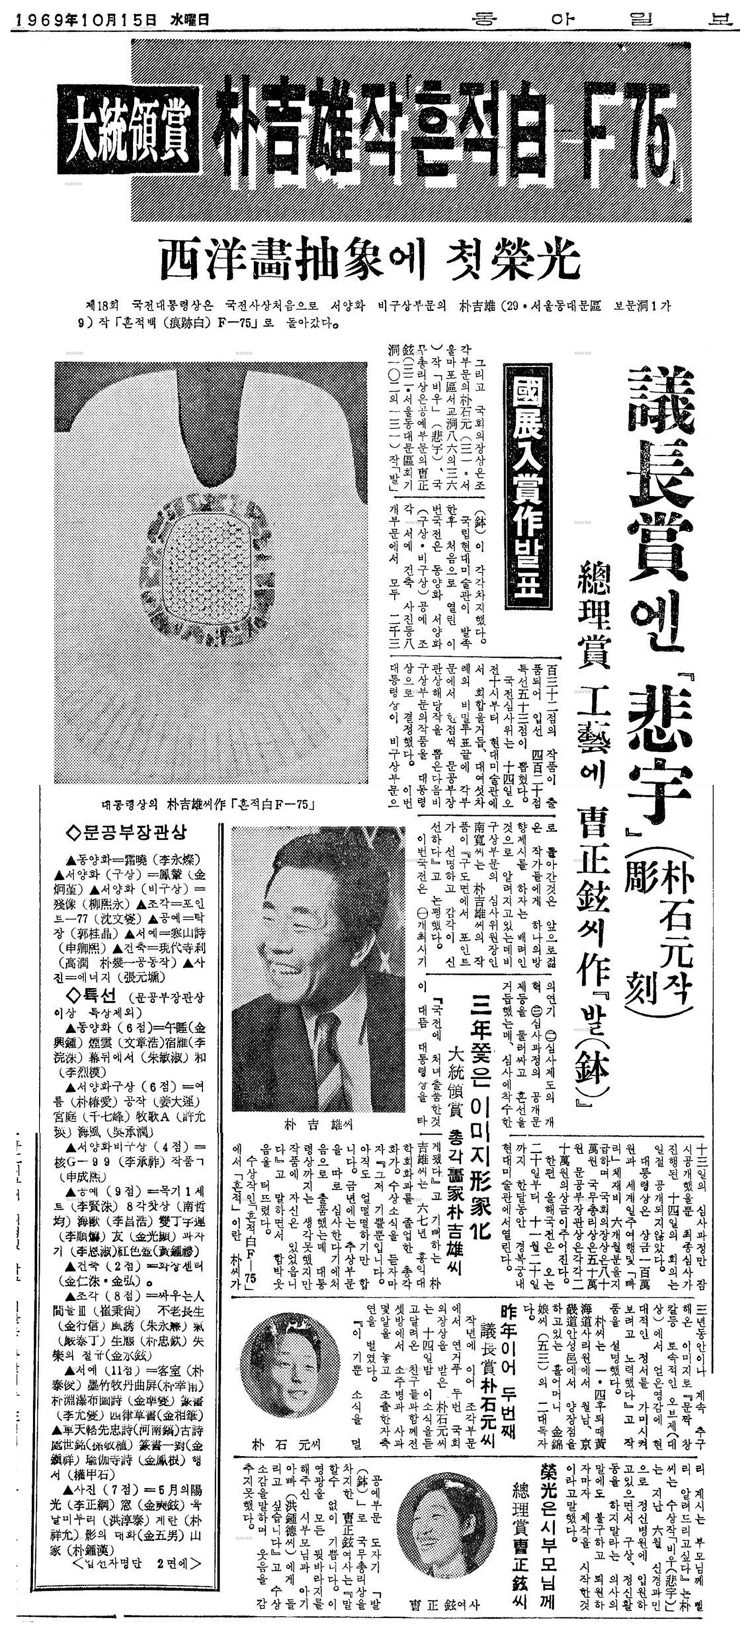 19691015동아일보_축소.jpg